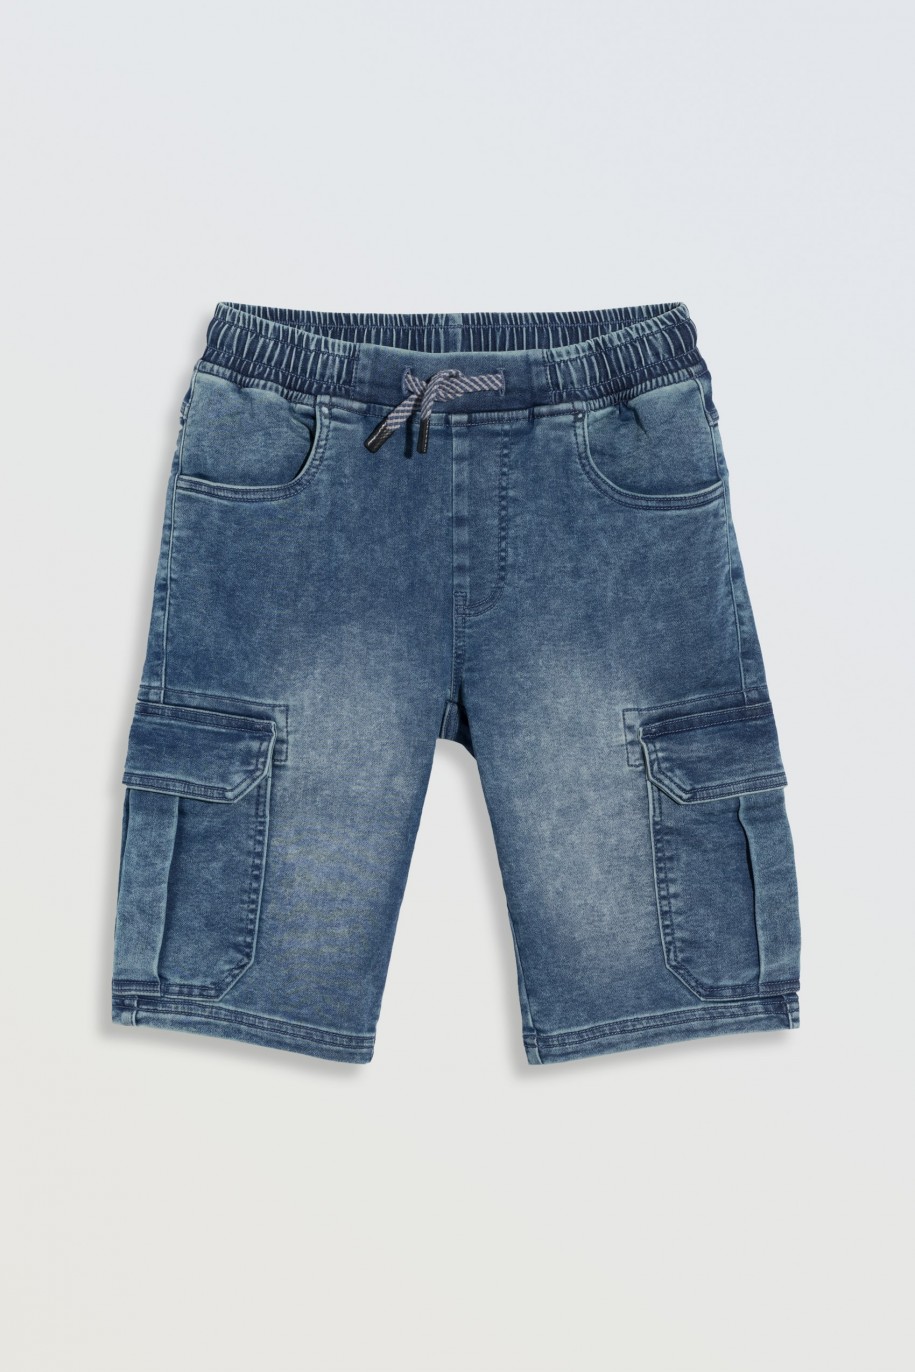 Niebieskie krótkie spodenki jeansowe z przestrzennymi kieszeniami - 46778